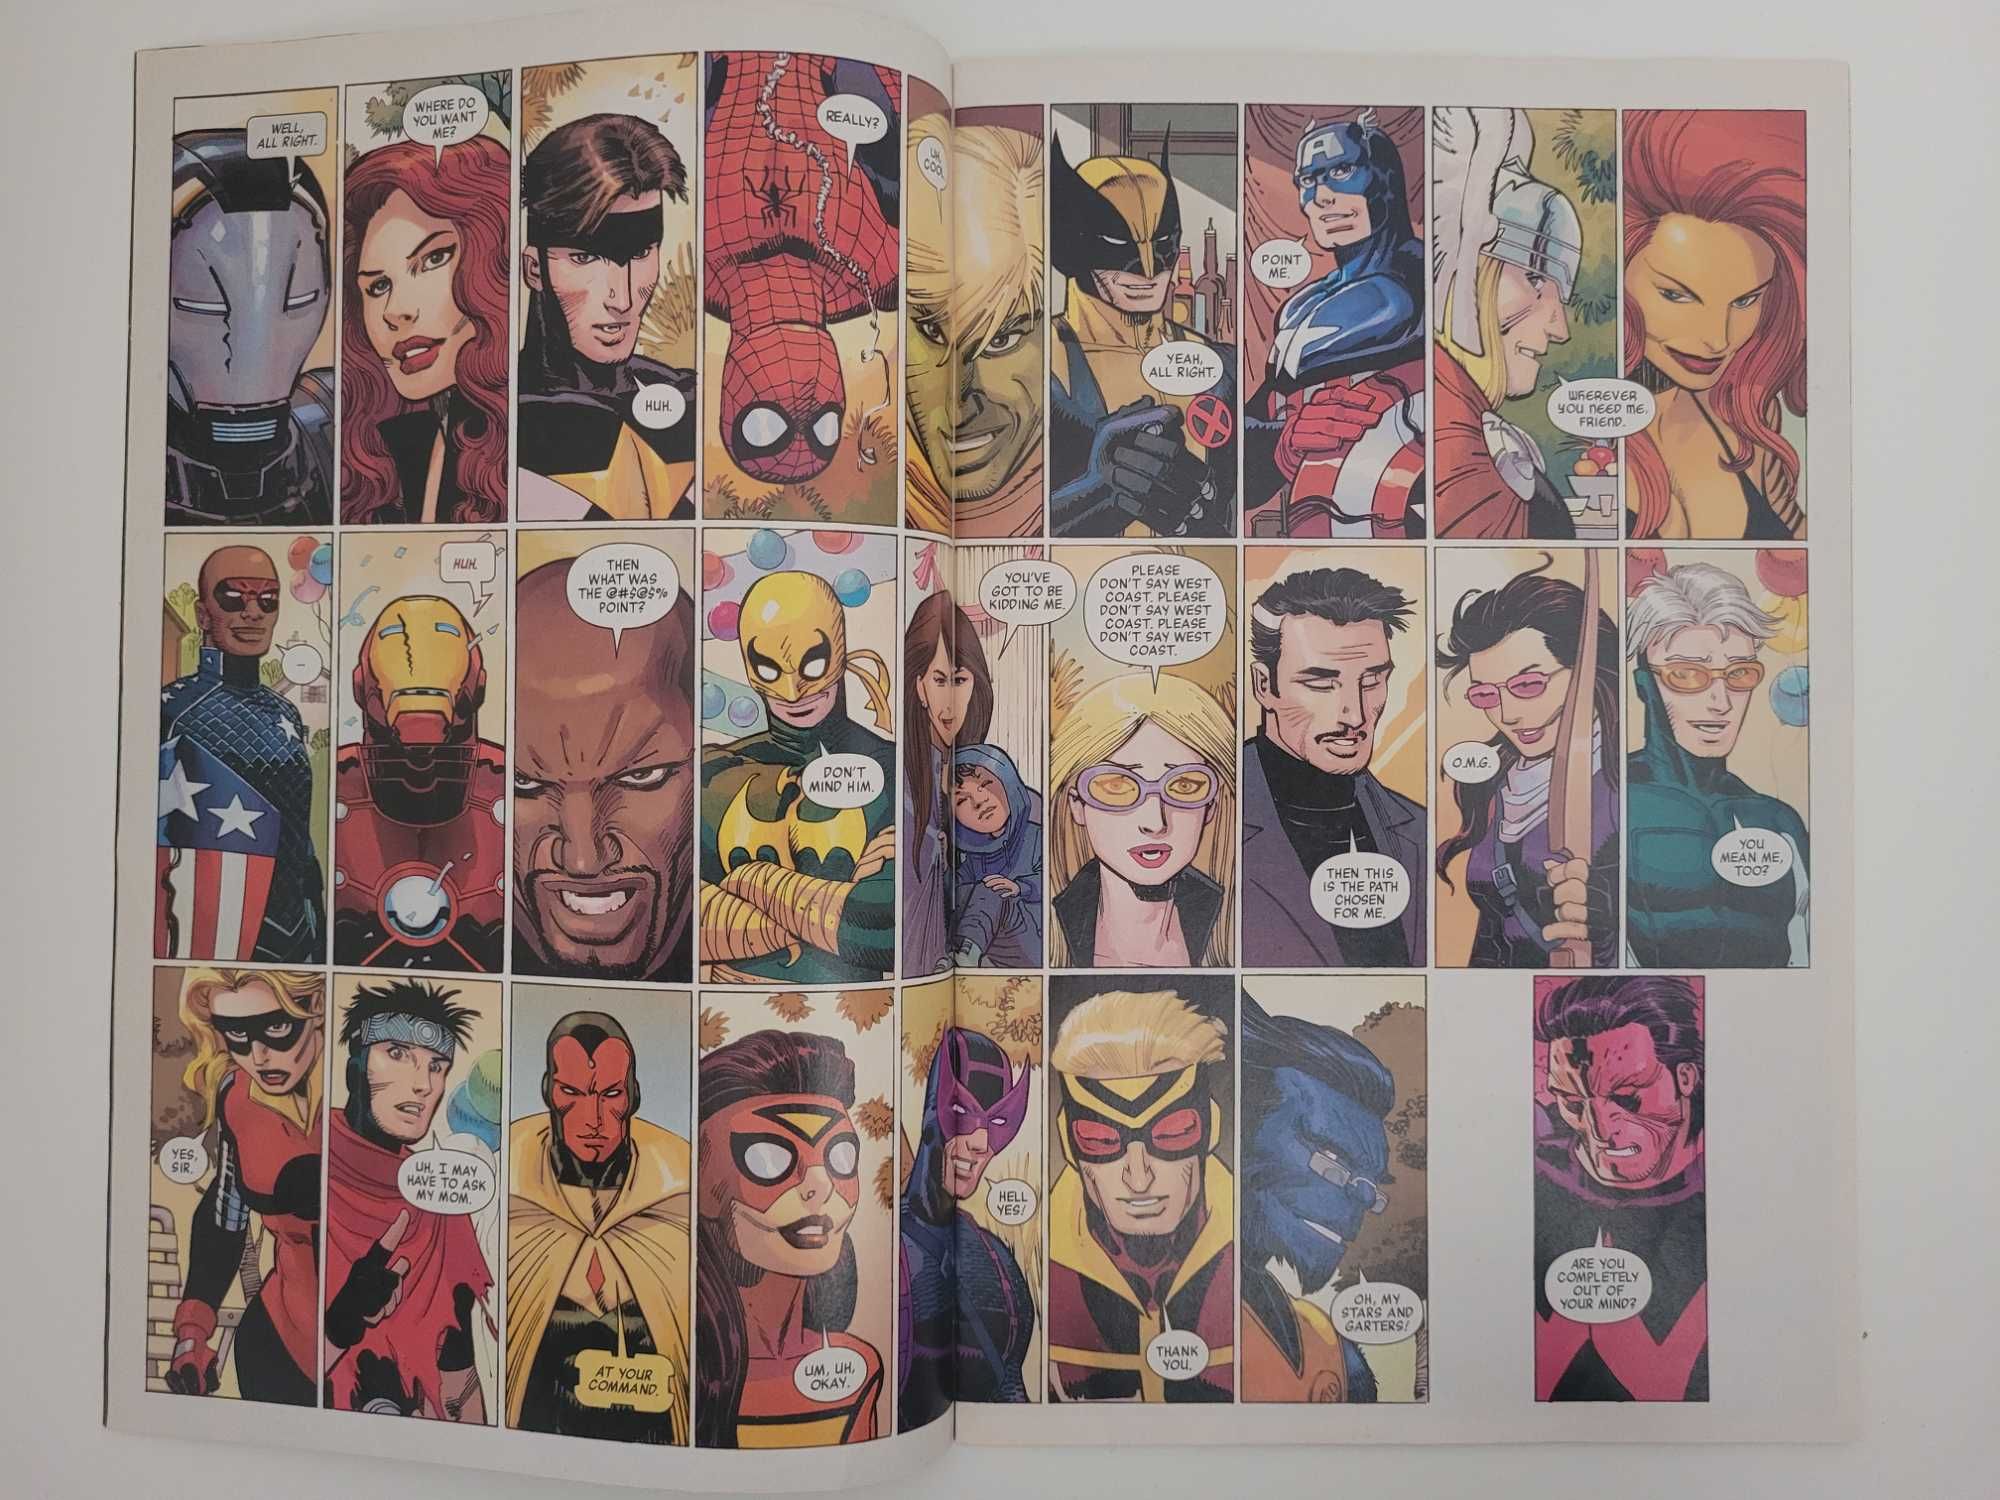 Marvel Comic - The Ultimates 2, vol 1&2 + Oferta de extras 15€ TUDO